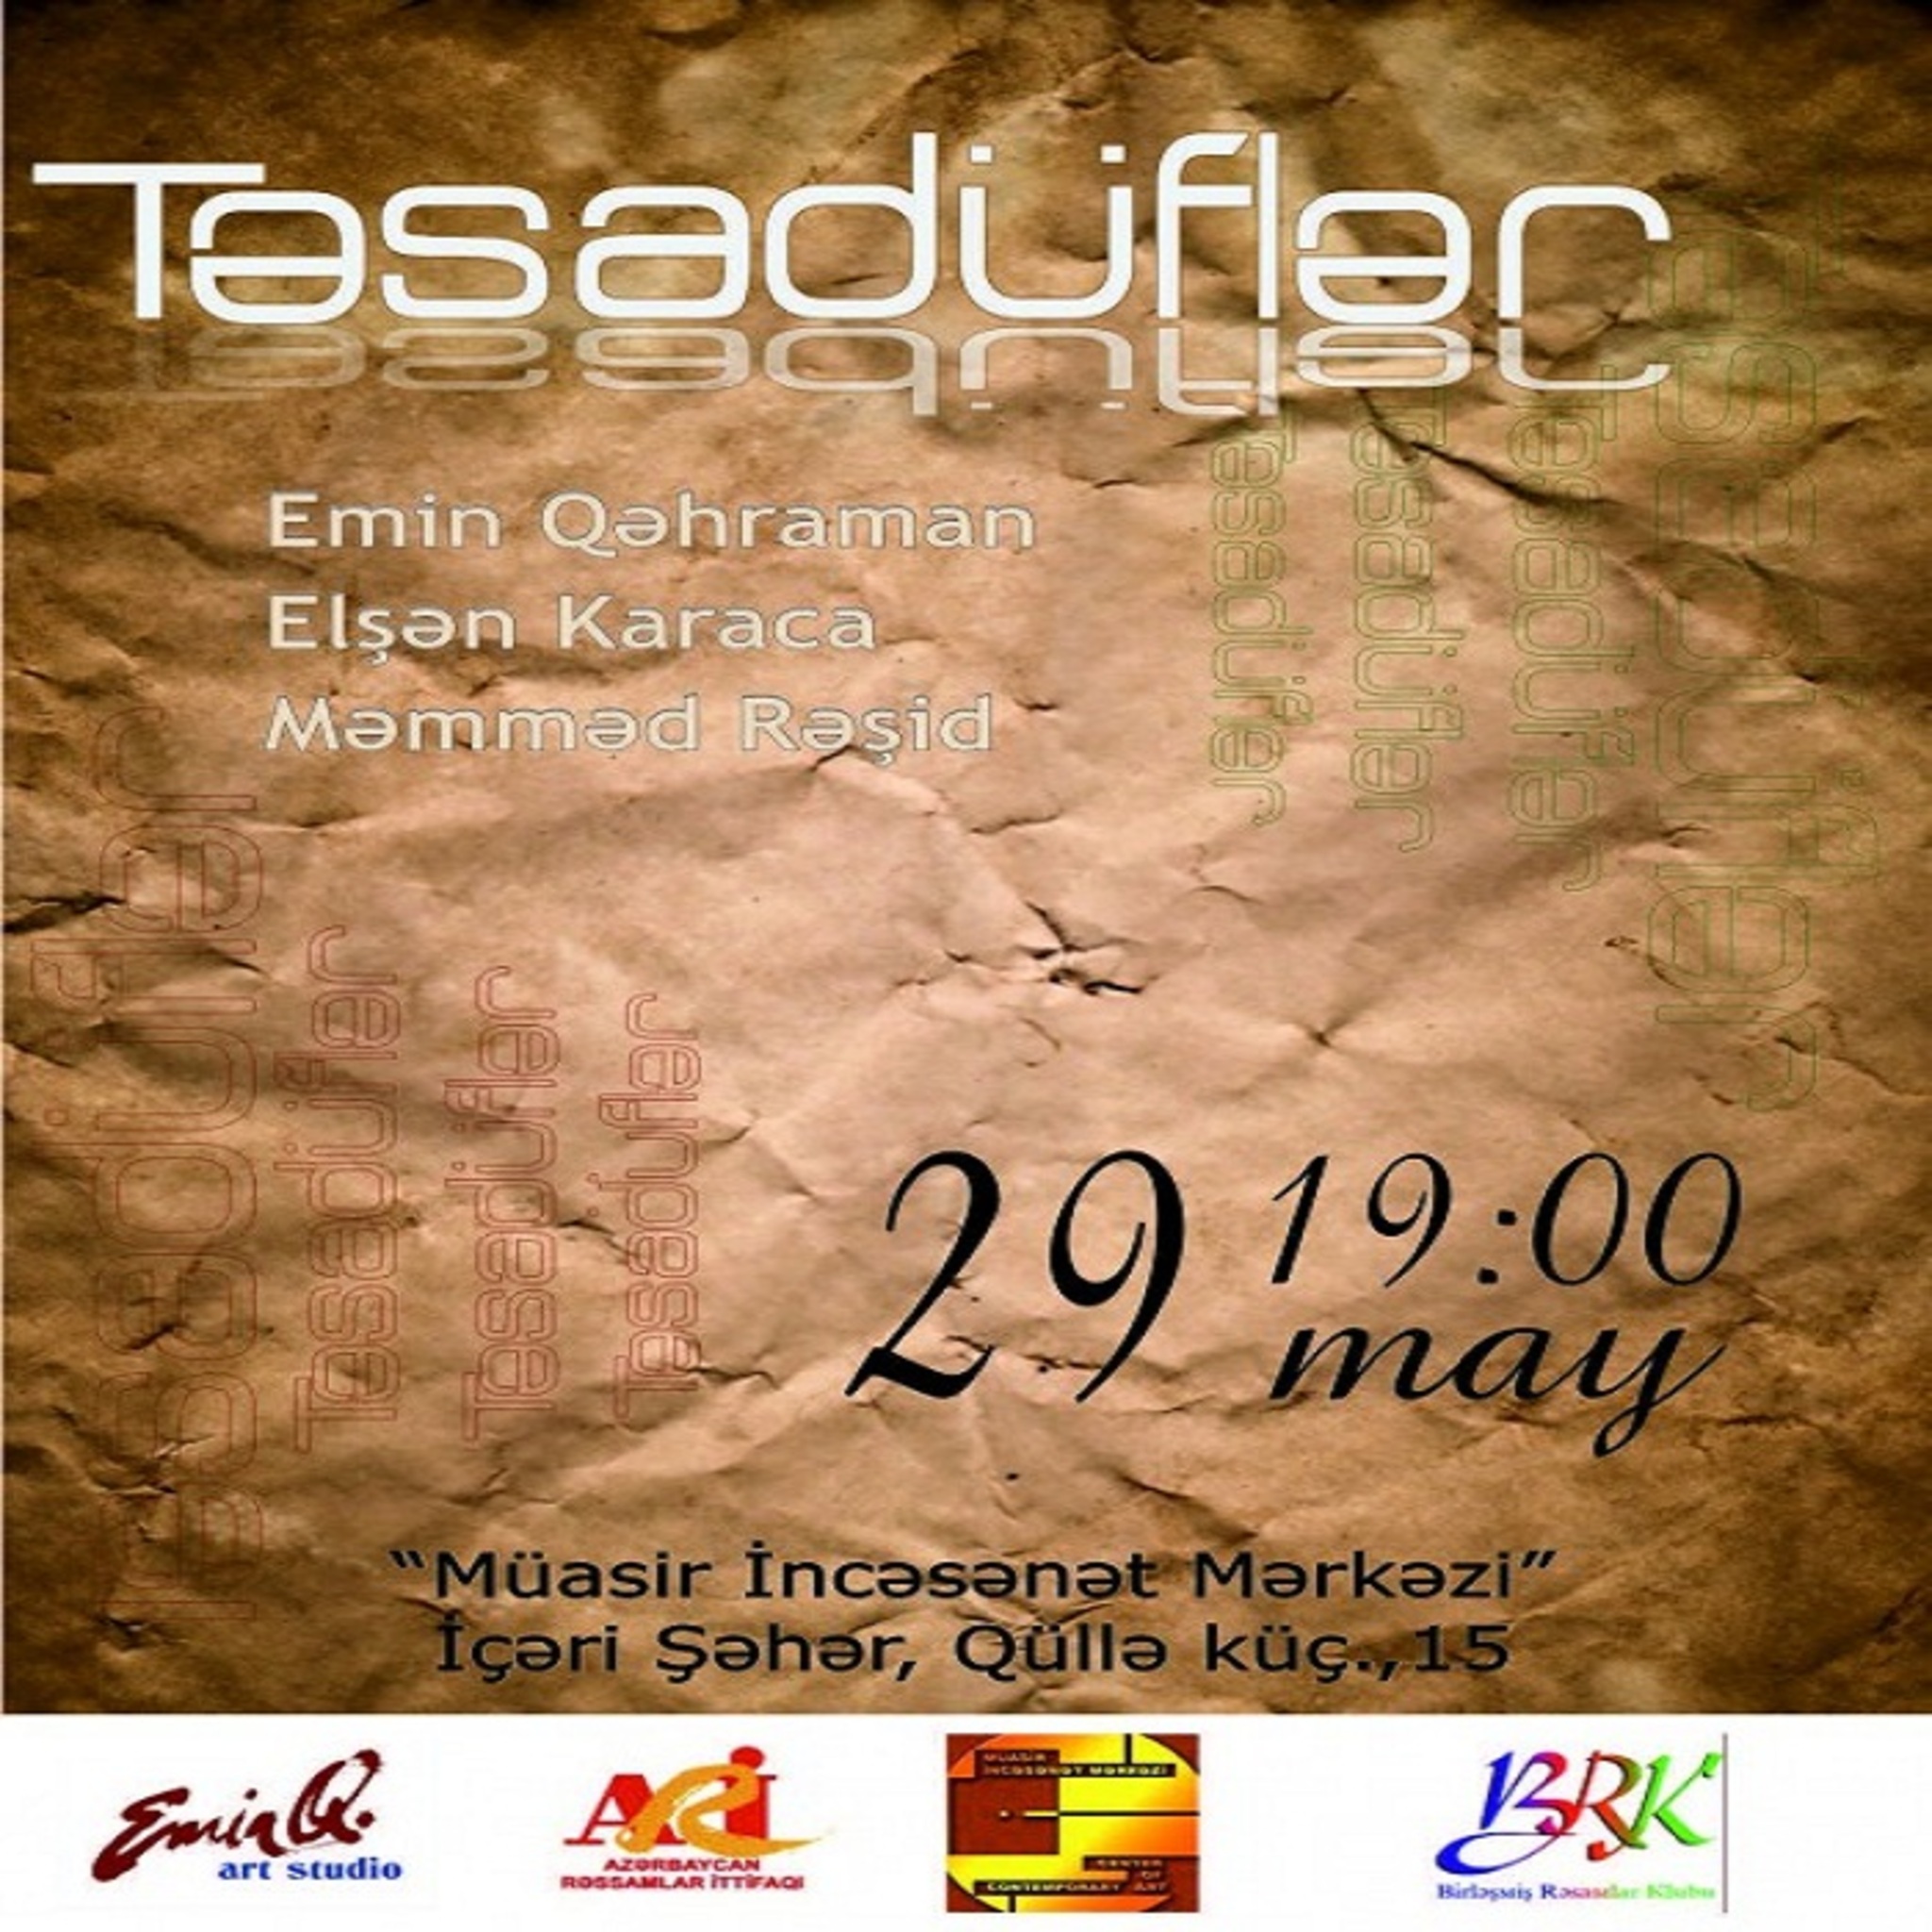 The exhibition Tesadufler